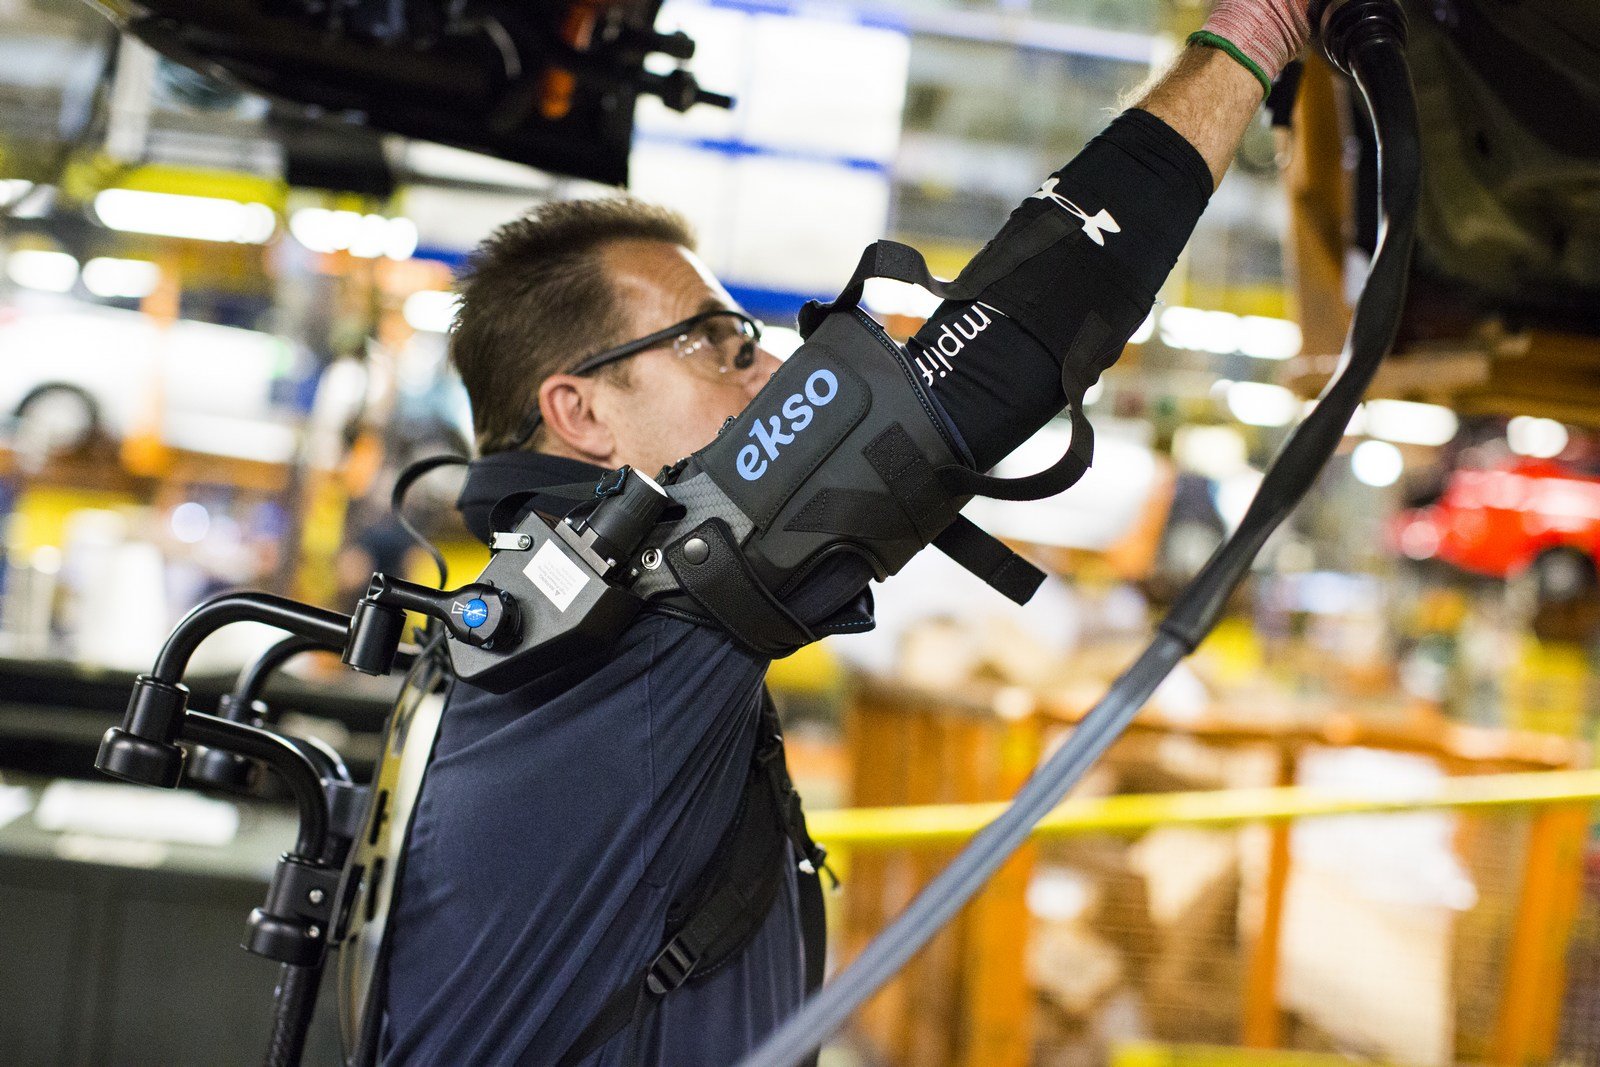 Někteří zaměstnanci Fordu začínají používat speciální exoskeleton EksoVest